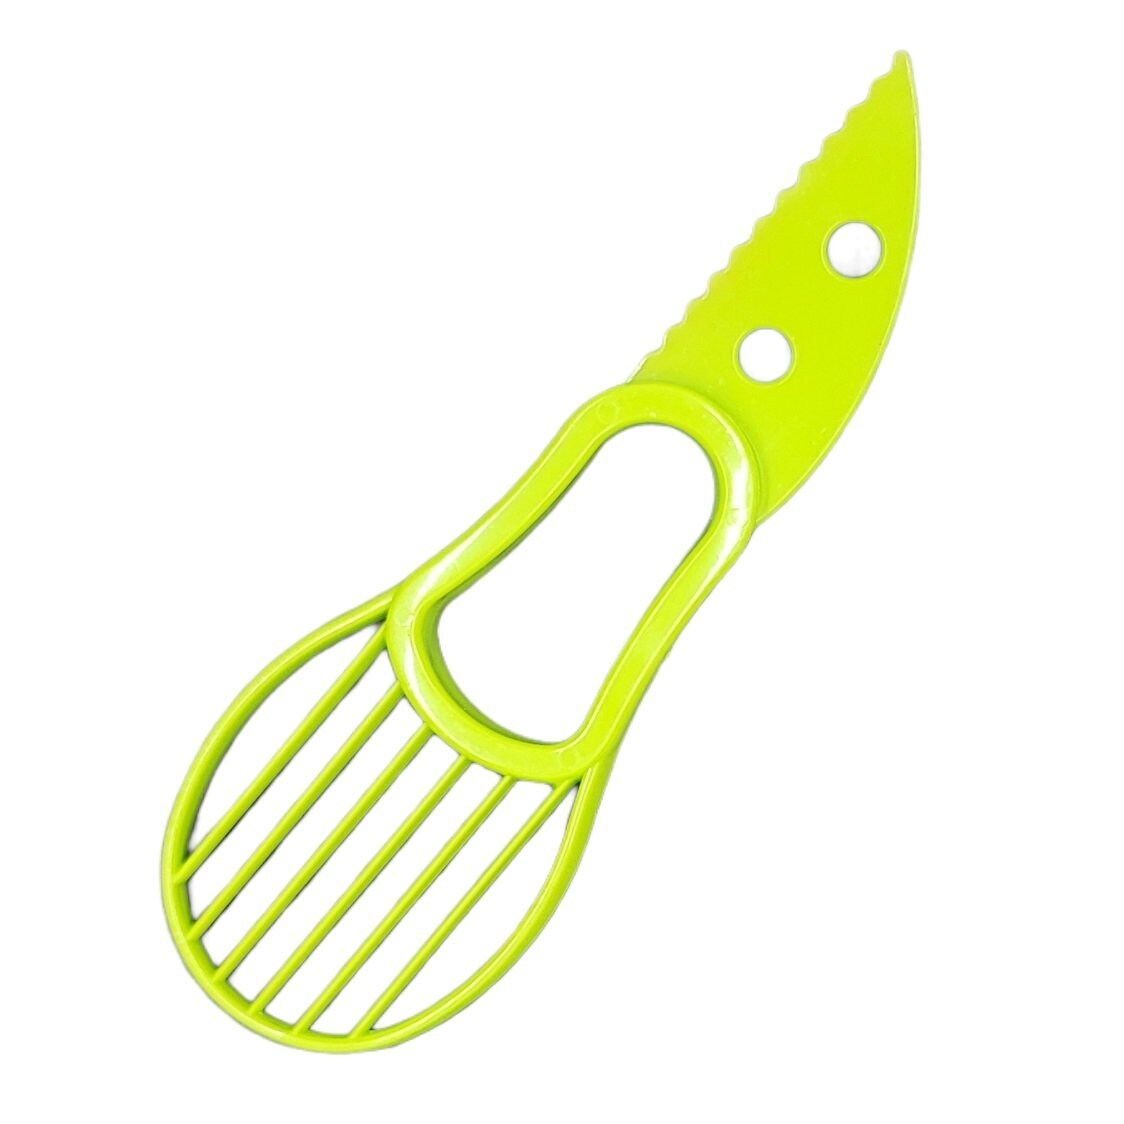 Jokari Avocado Tool 6 in 1 Opener Knife